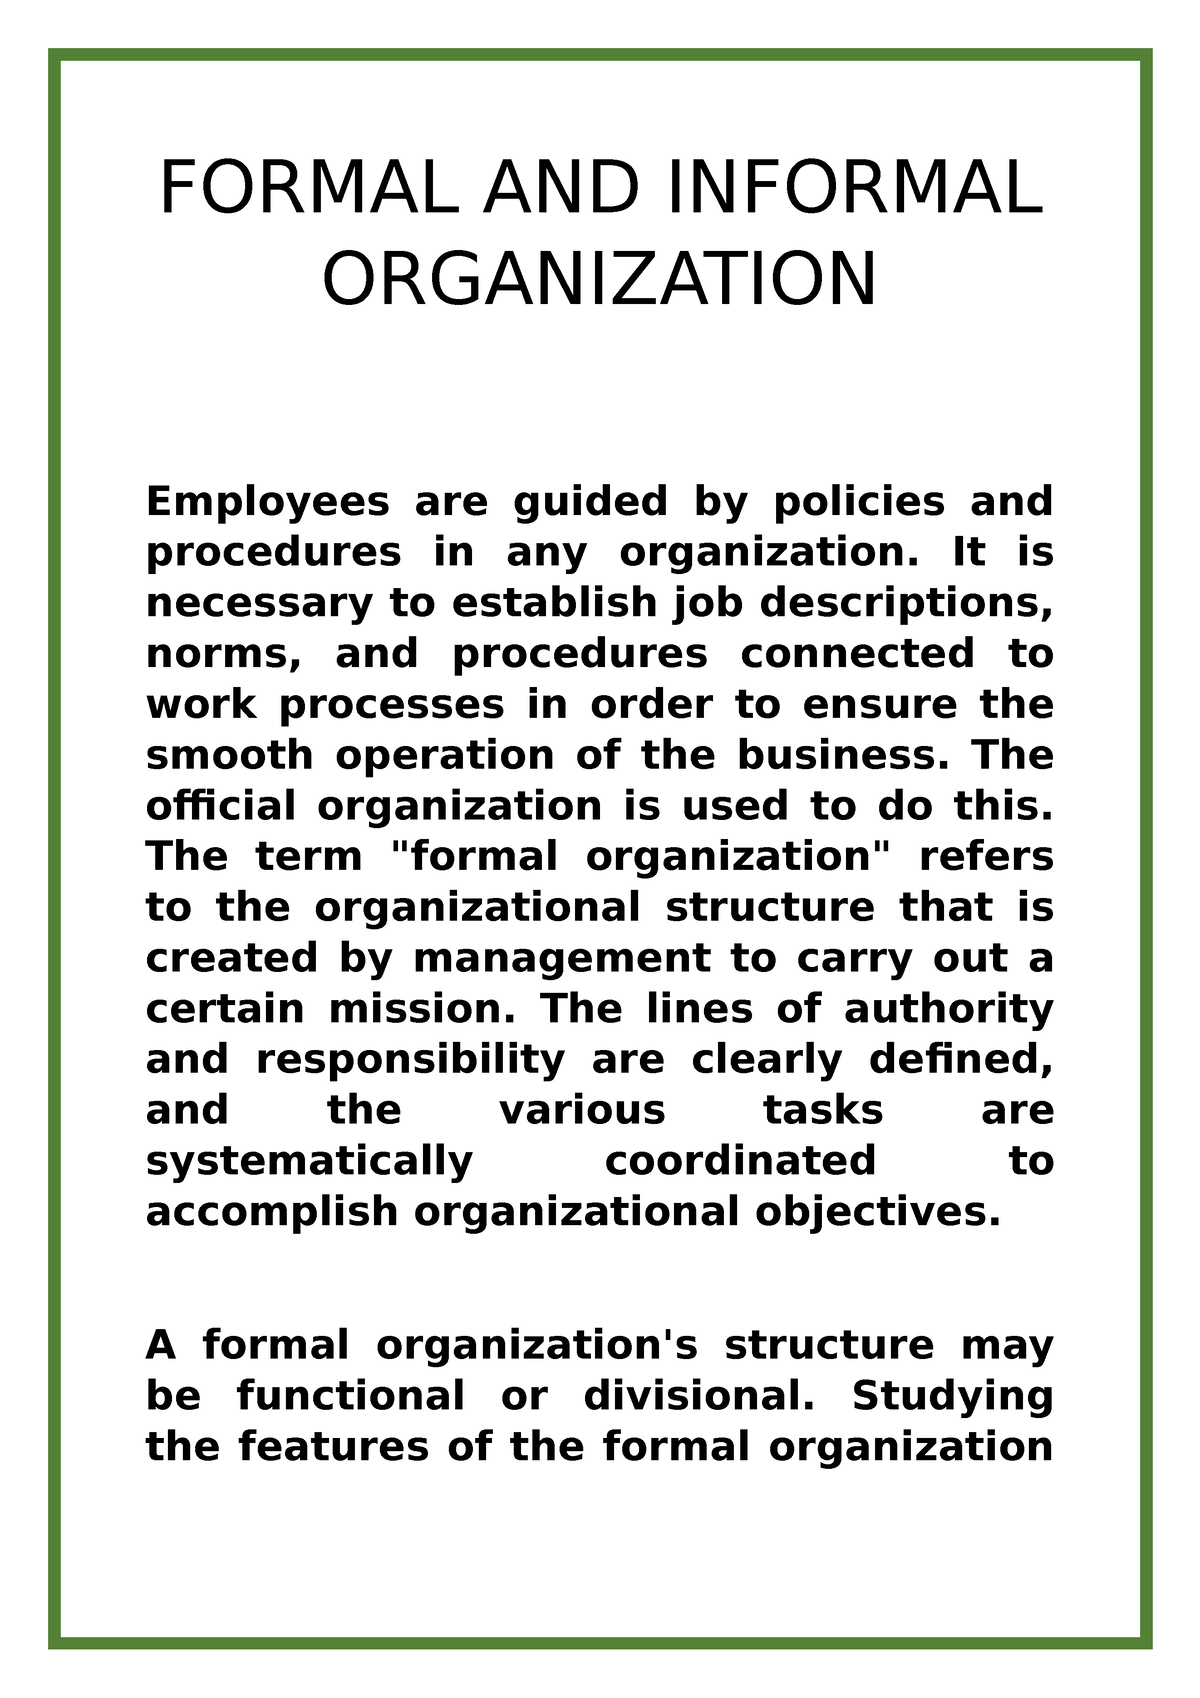 essay about informal organization